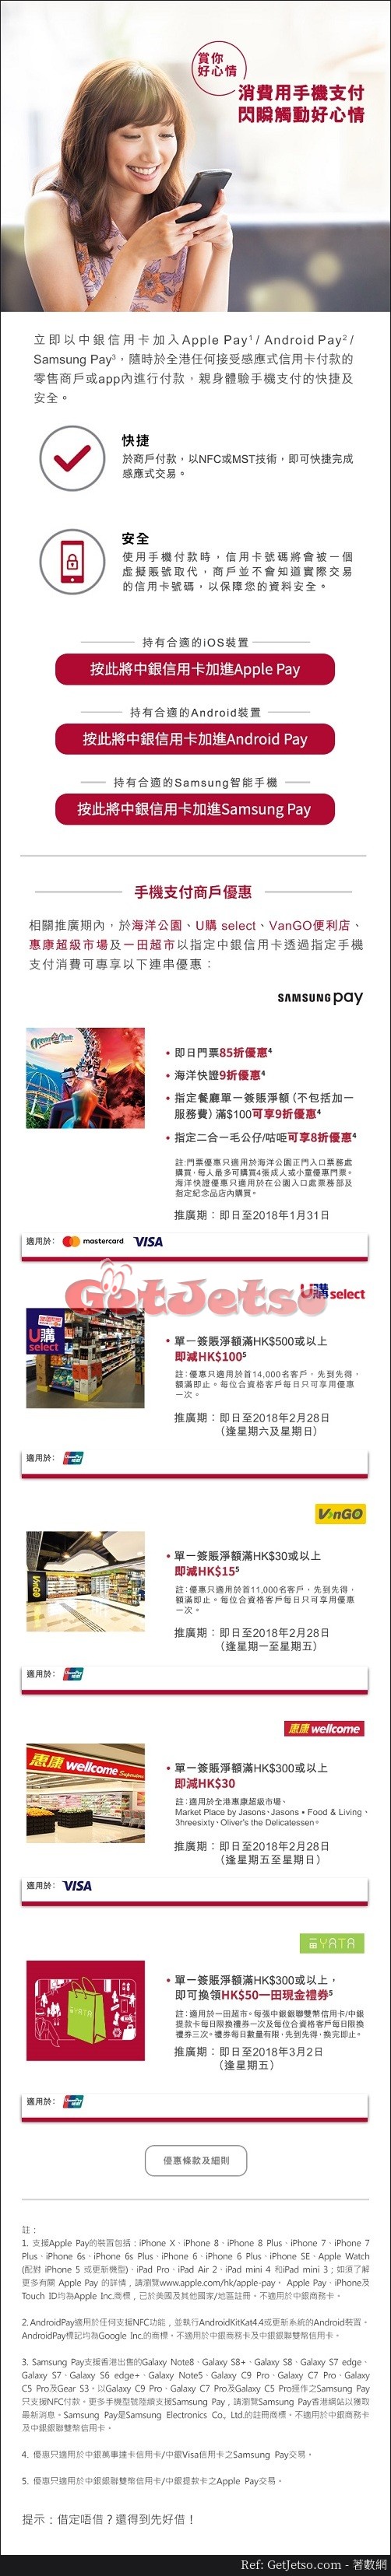 中銀信用卡手機支付優惠(至18年3月2日)圖片1